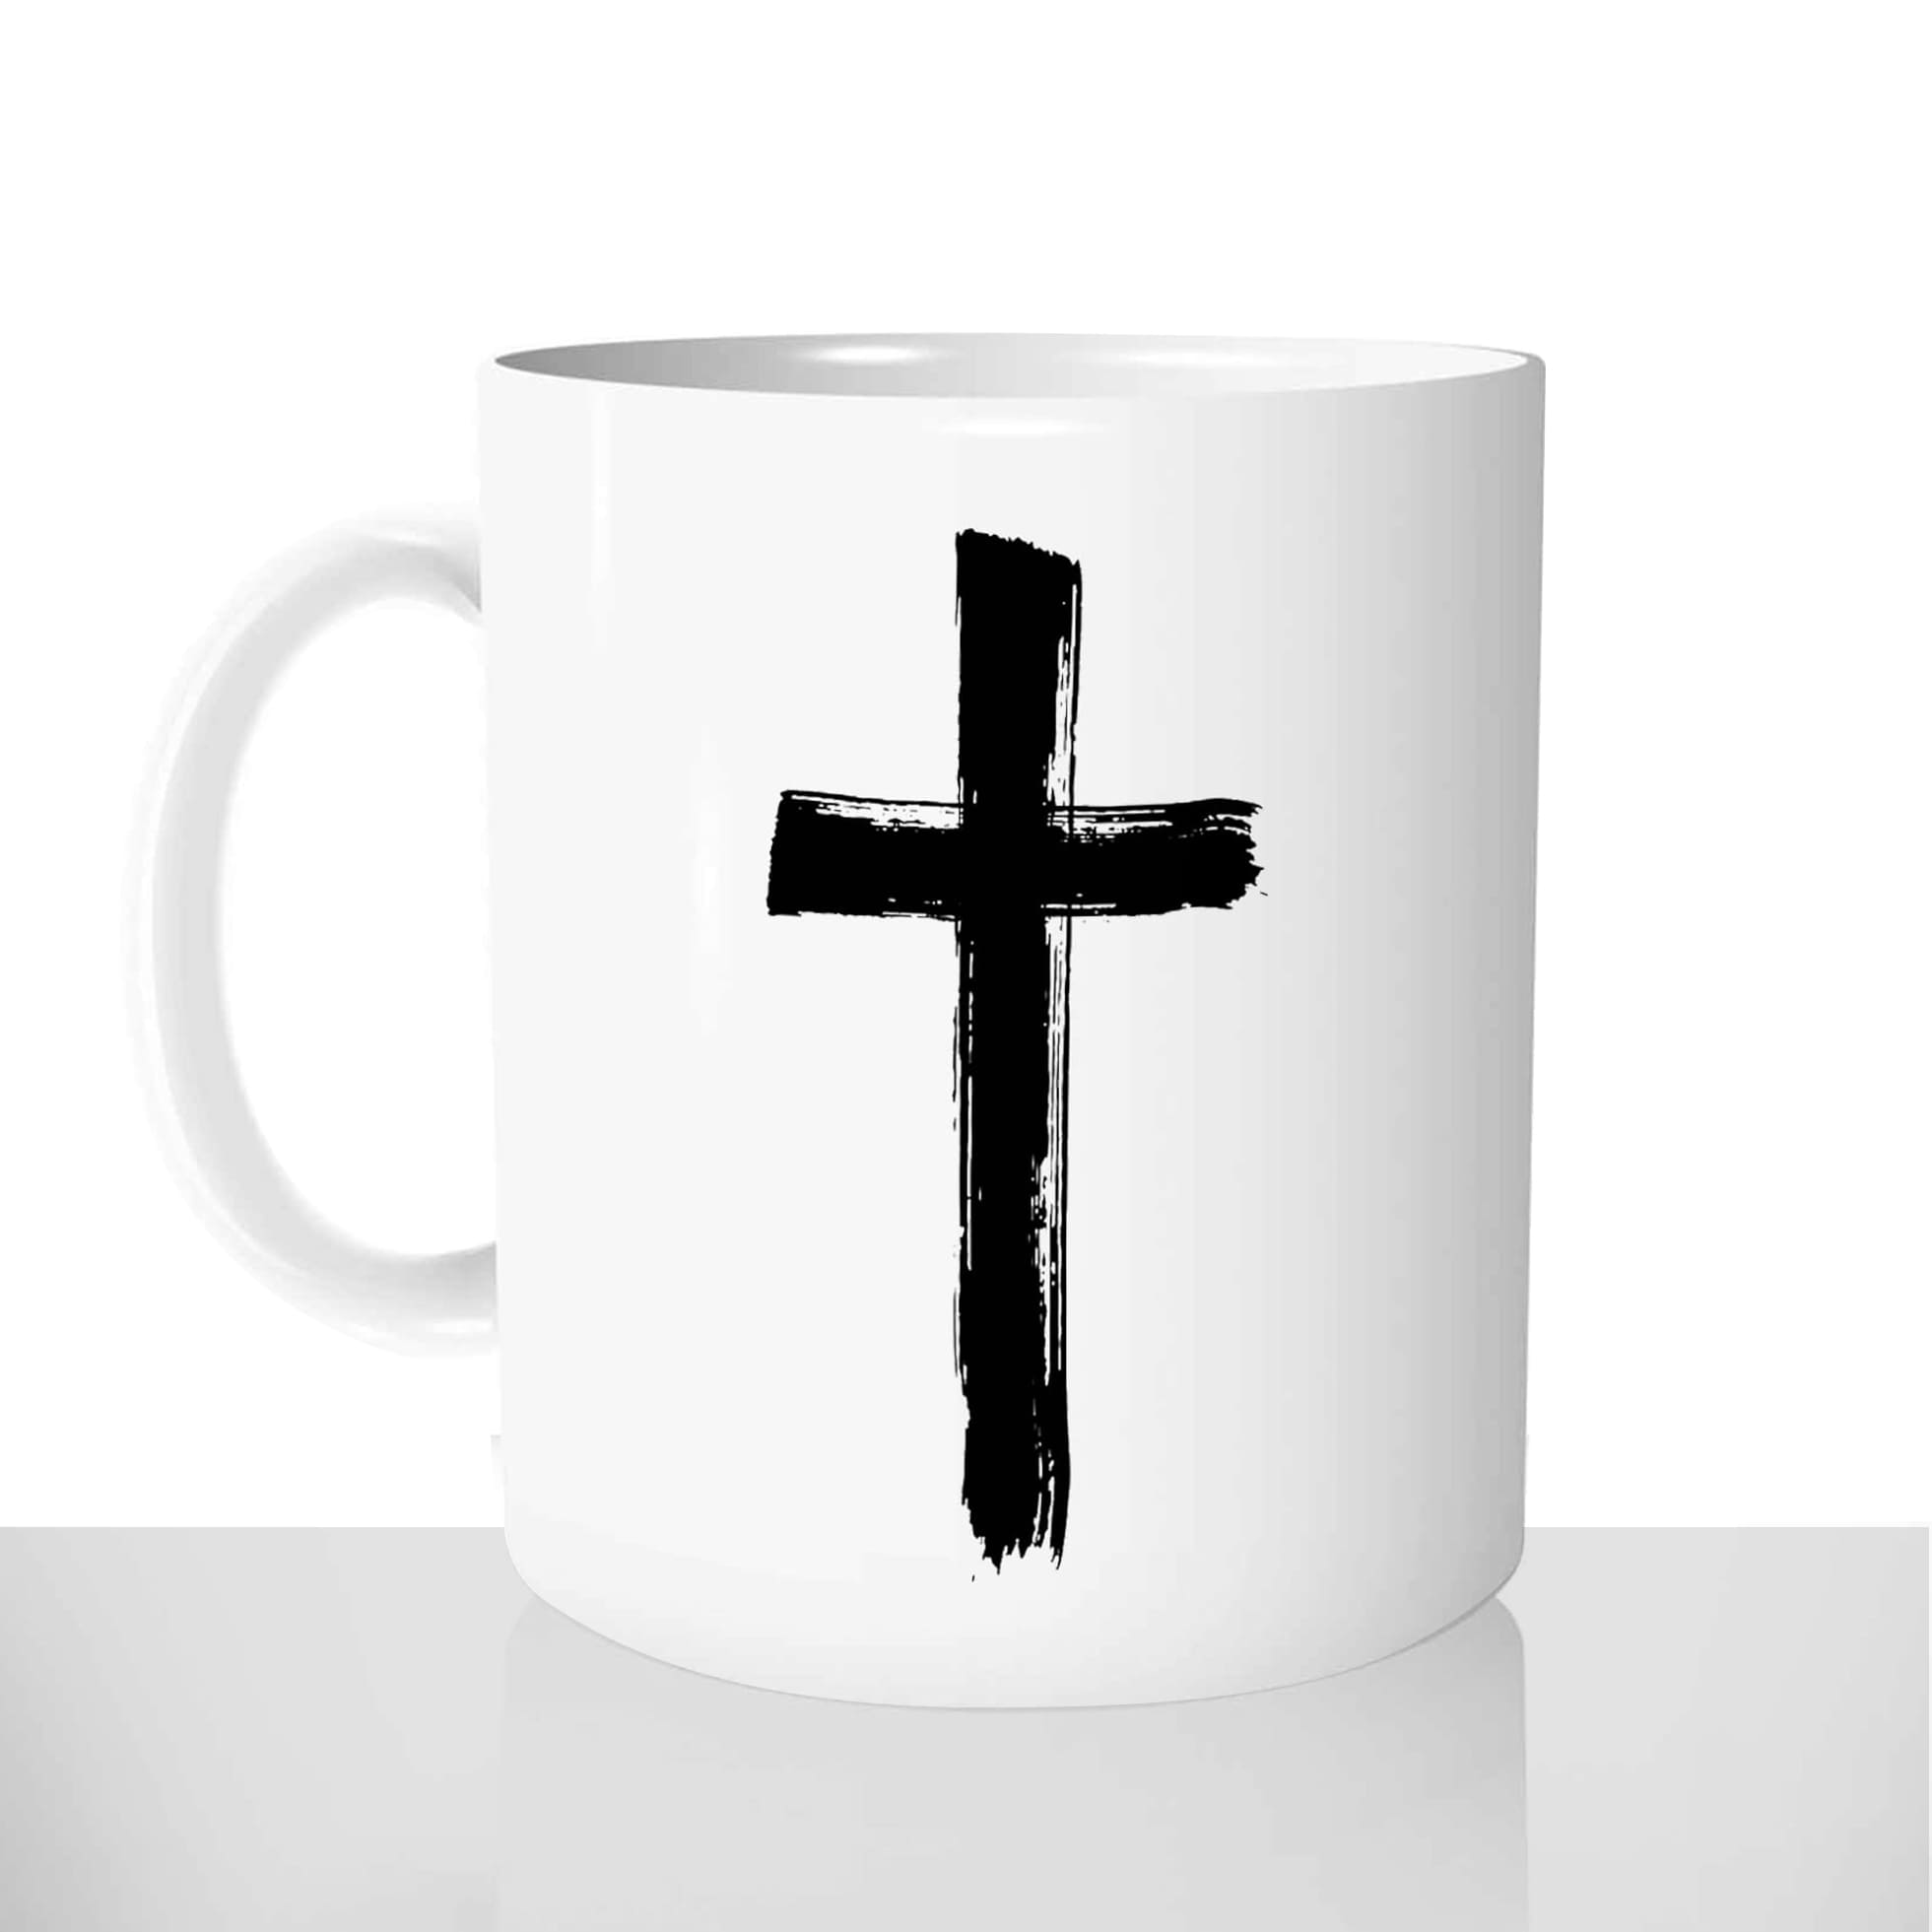 mug classique en céramique 11oz personnalisé personnalisation photo croix chretienne jesus christ messe croyant priere cadeau personnalisable